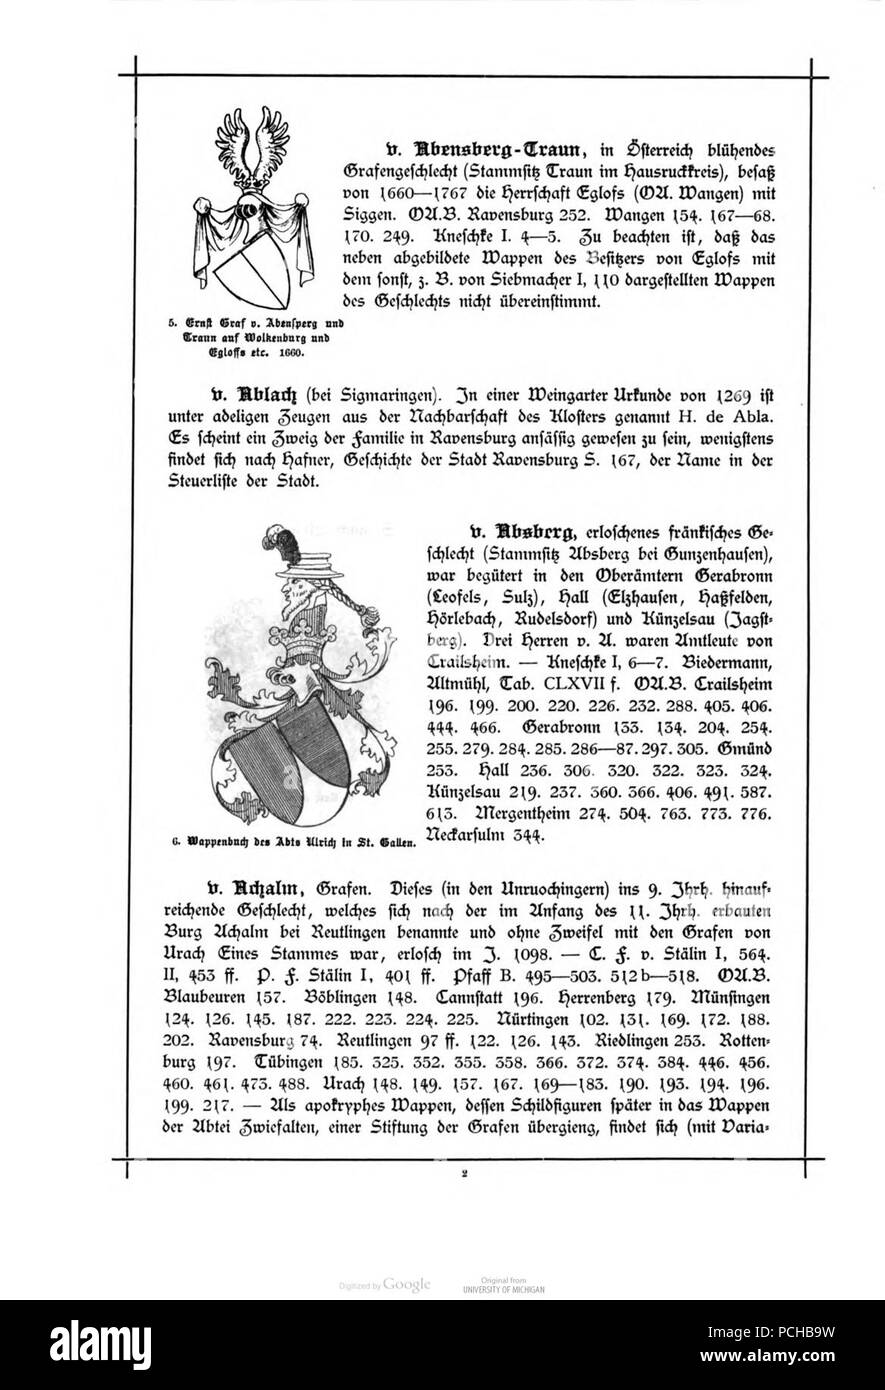 Alberti Wuerttembergisches Adels- und Wappenbuch 0002. Stock Photo